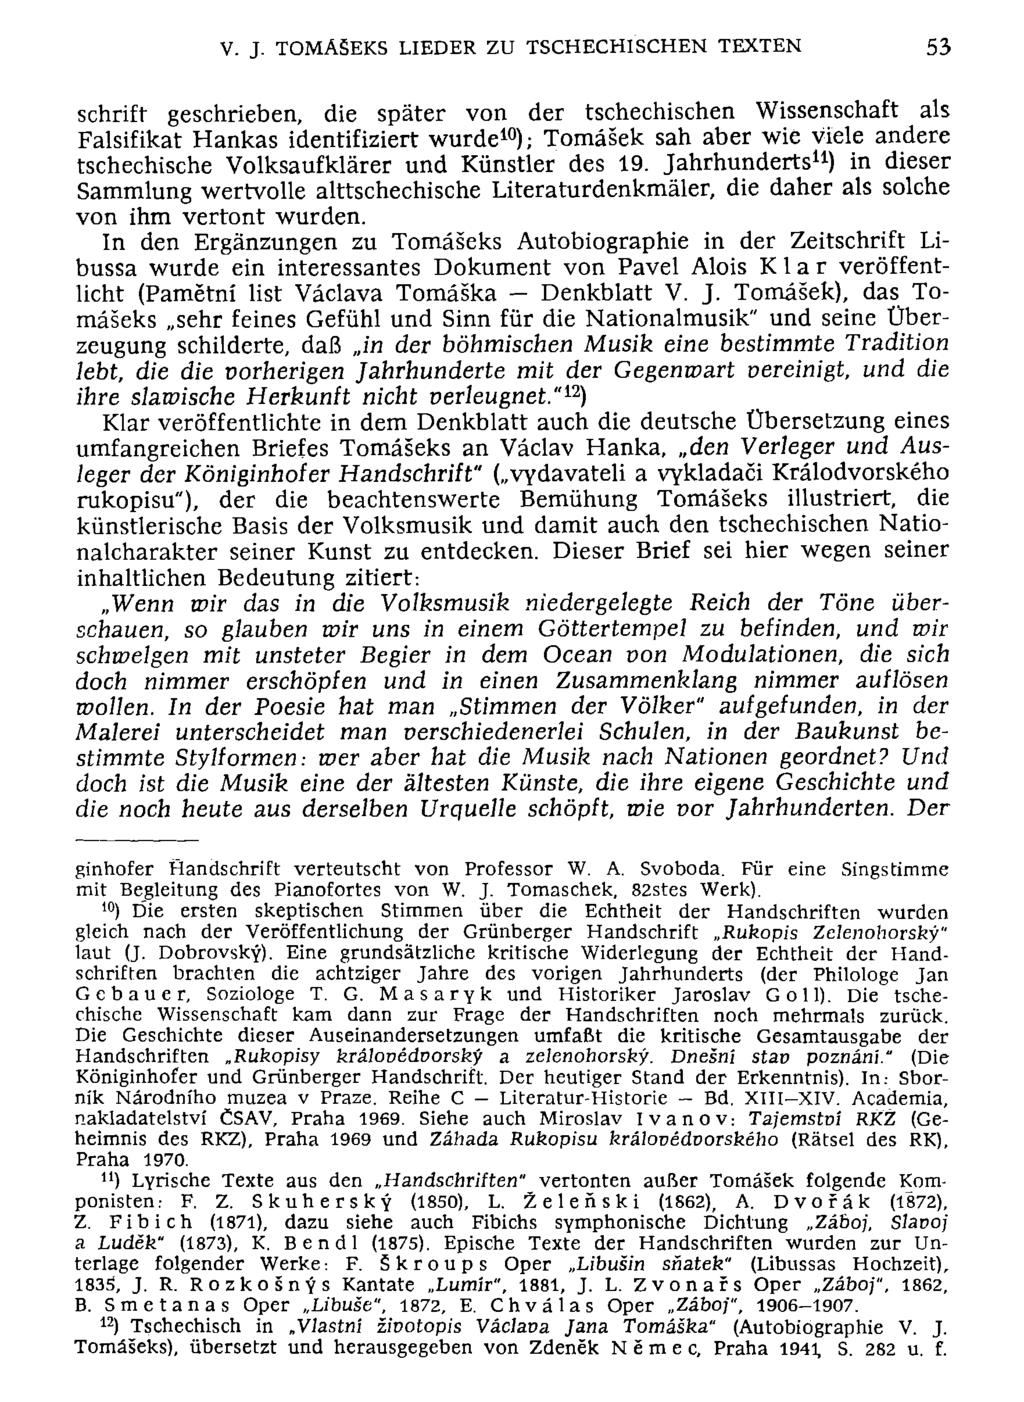 V. J. TOMÄ5EKS LIEDER ZU TSCHECHISCHEN TEXTEN 53 schrift geschrieben, die später von der tschechischen Wissenschaft als Falsifikat Hankas identifiziert wurde 10 ); Tomäsek sah aber wie viele andere